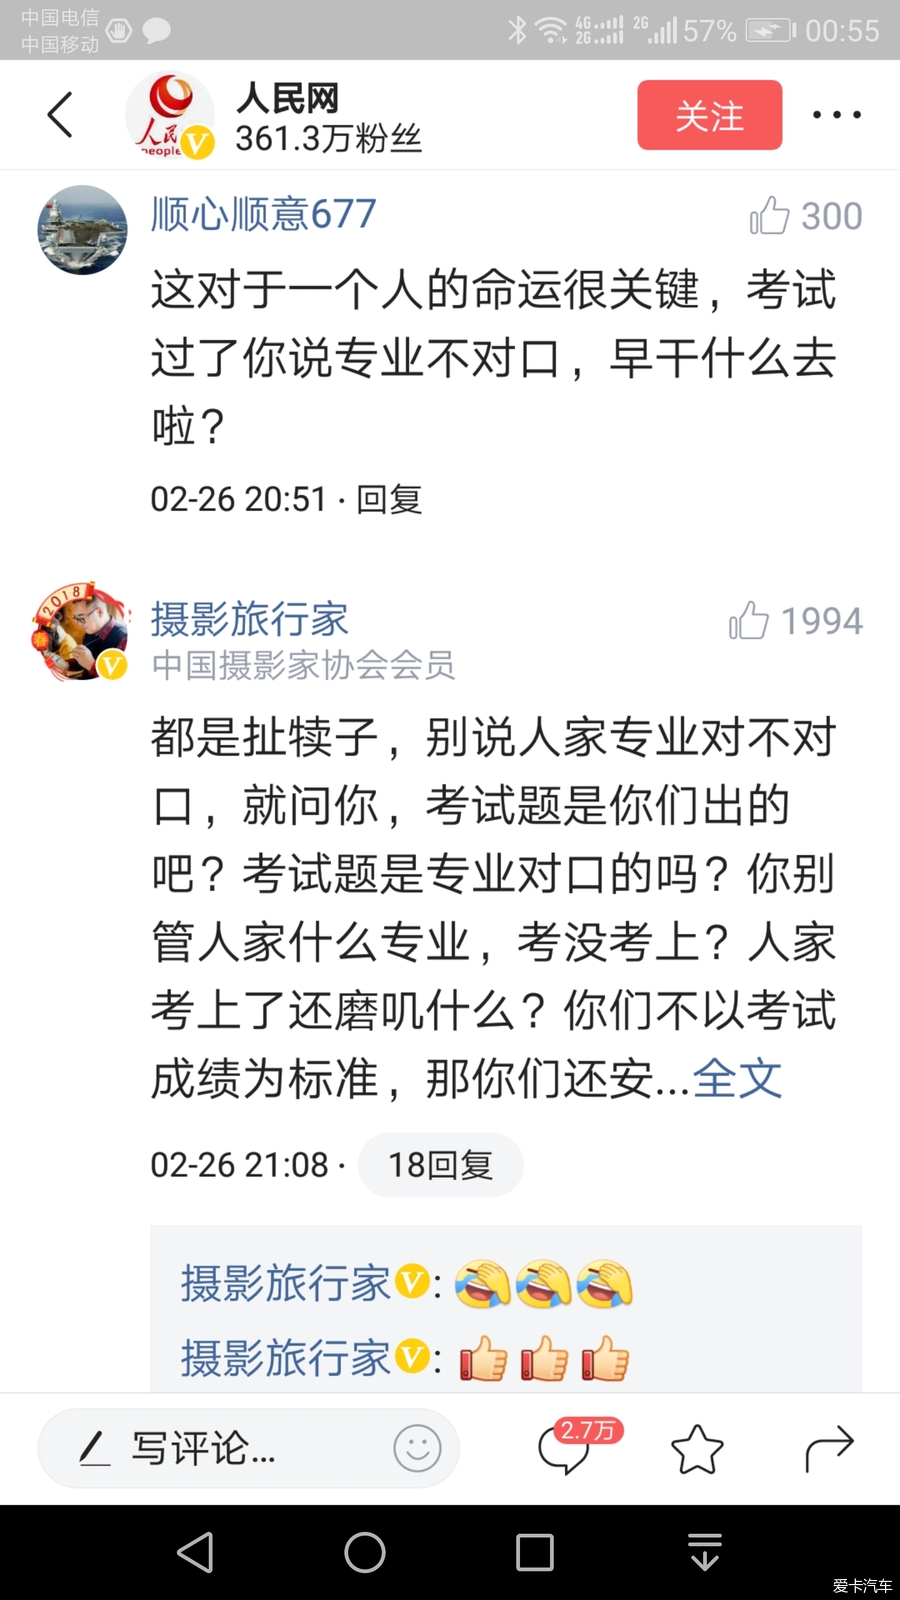 徐州通报女硕士考公务员遭拒录处理:责成两单